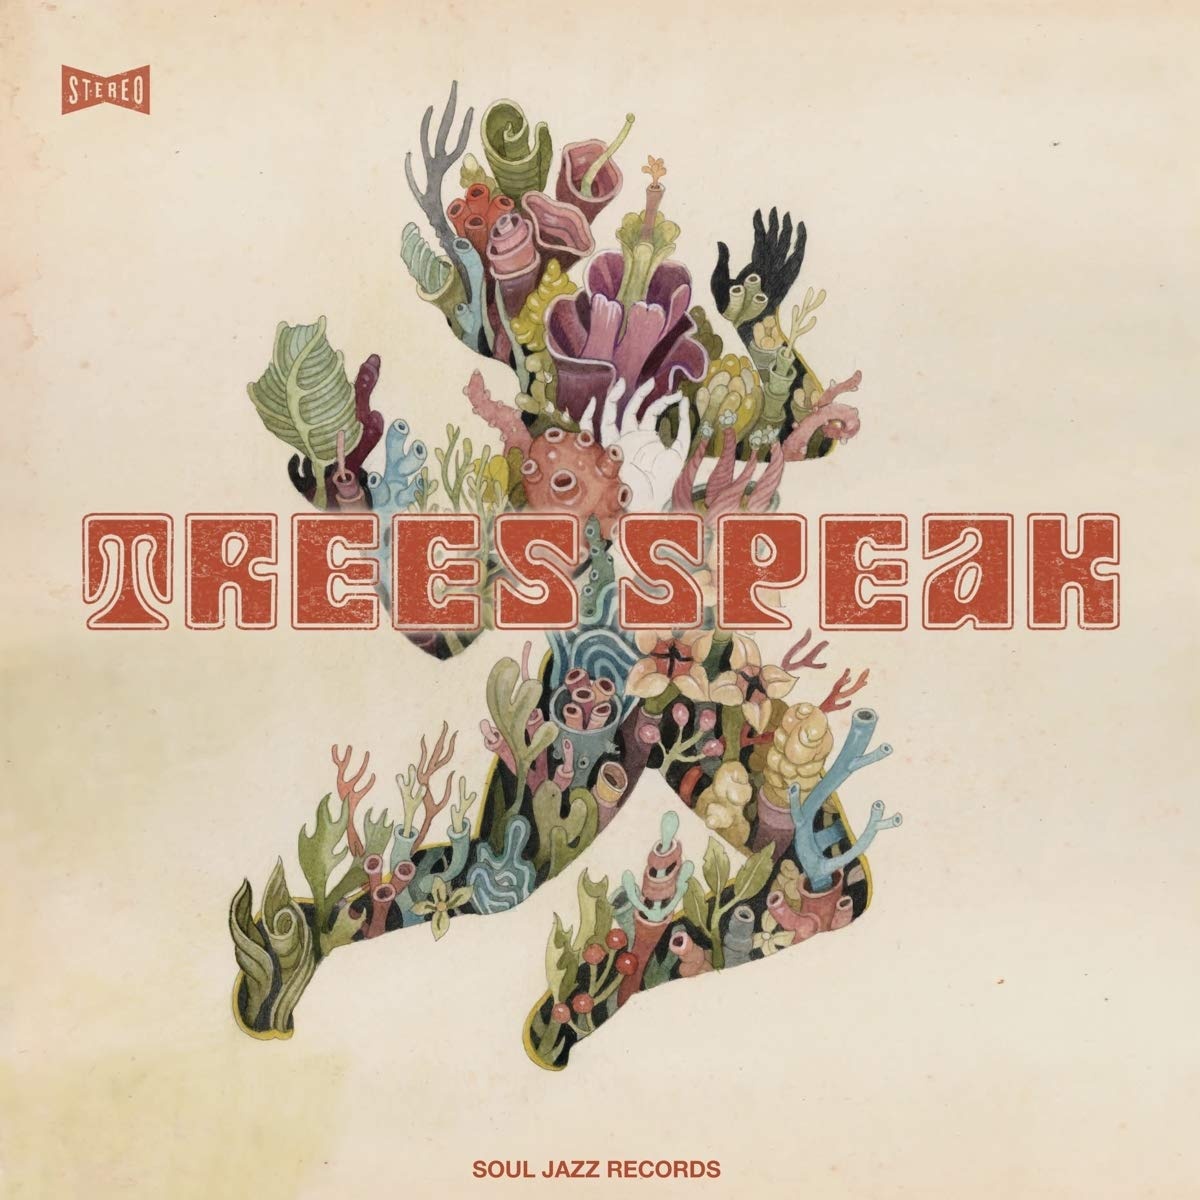 Speaking tree. Деревья LP. Джазовое дерево. Музыкальный альбом с деревом. Trees speak binari Helldrivers.